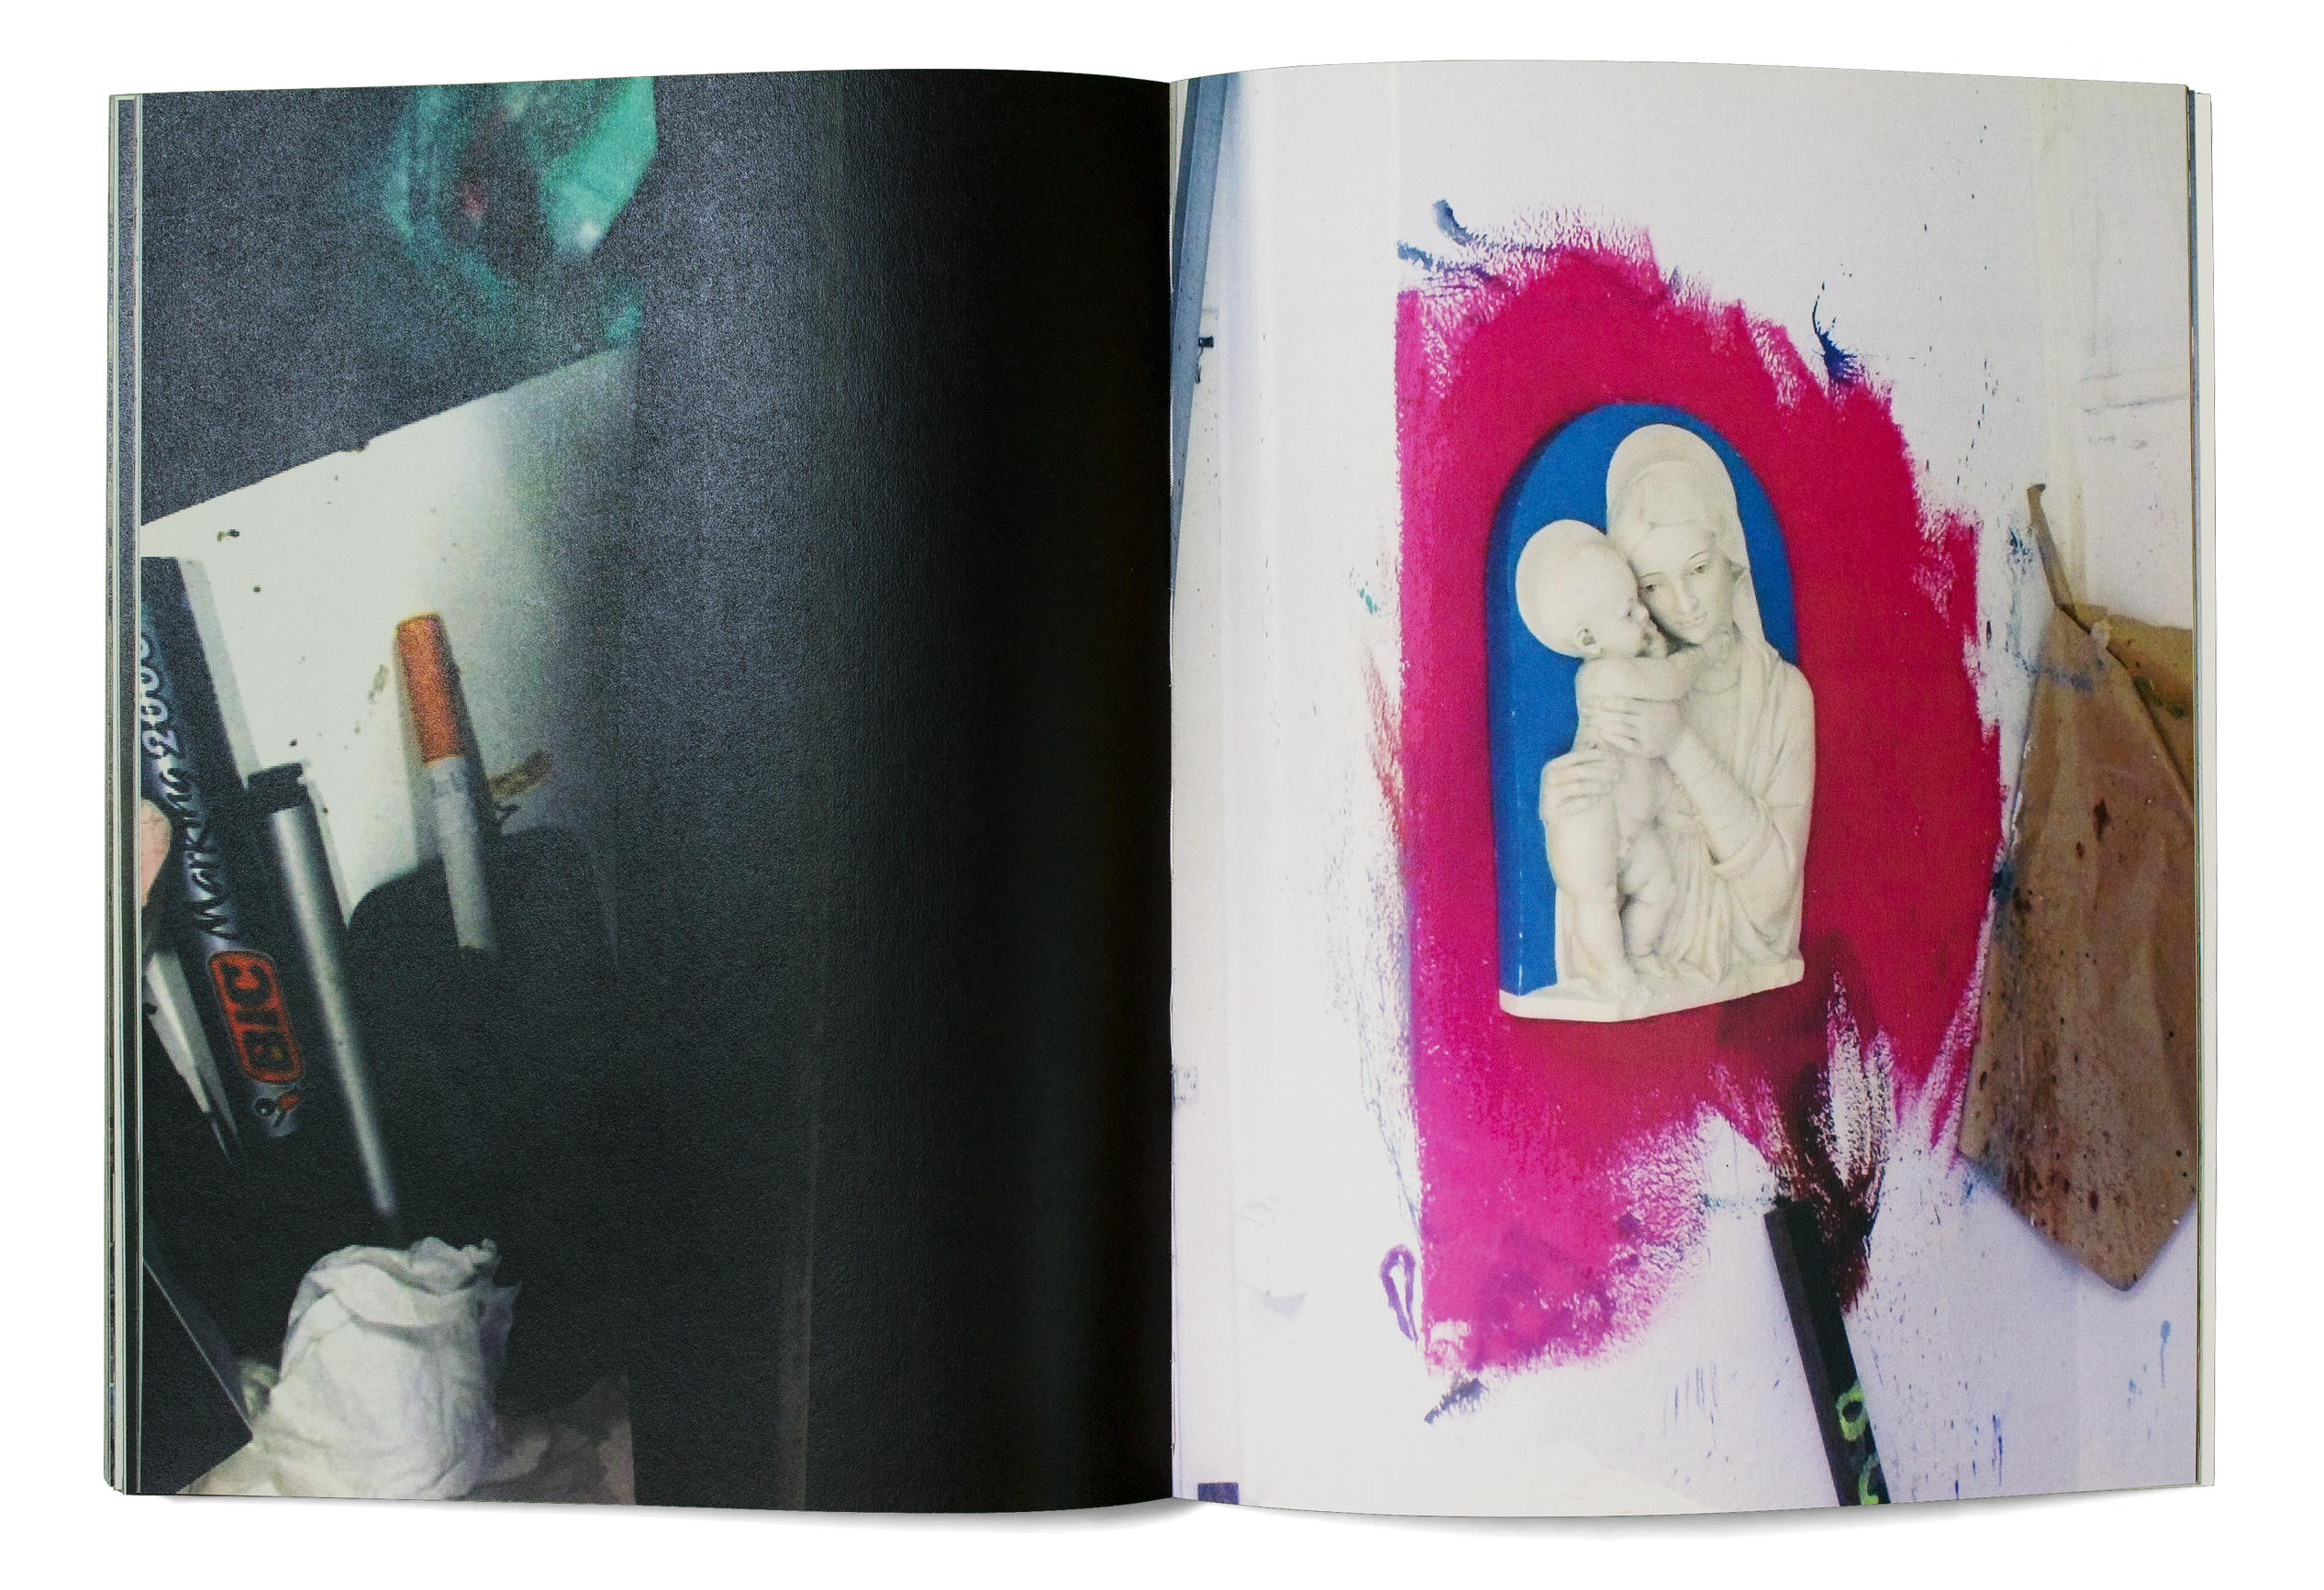 Double page du livre d'artiste «Through the Windows» de David Hominal, publié par le Centre d’édition contemporaine, Genève